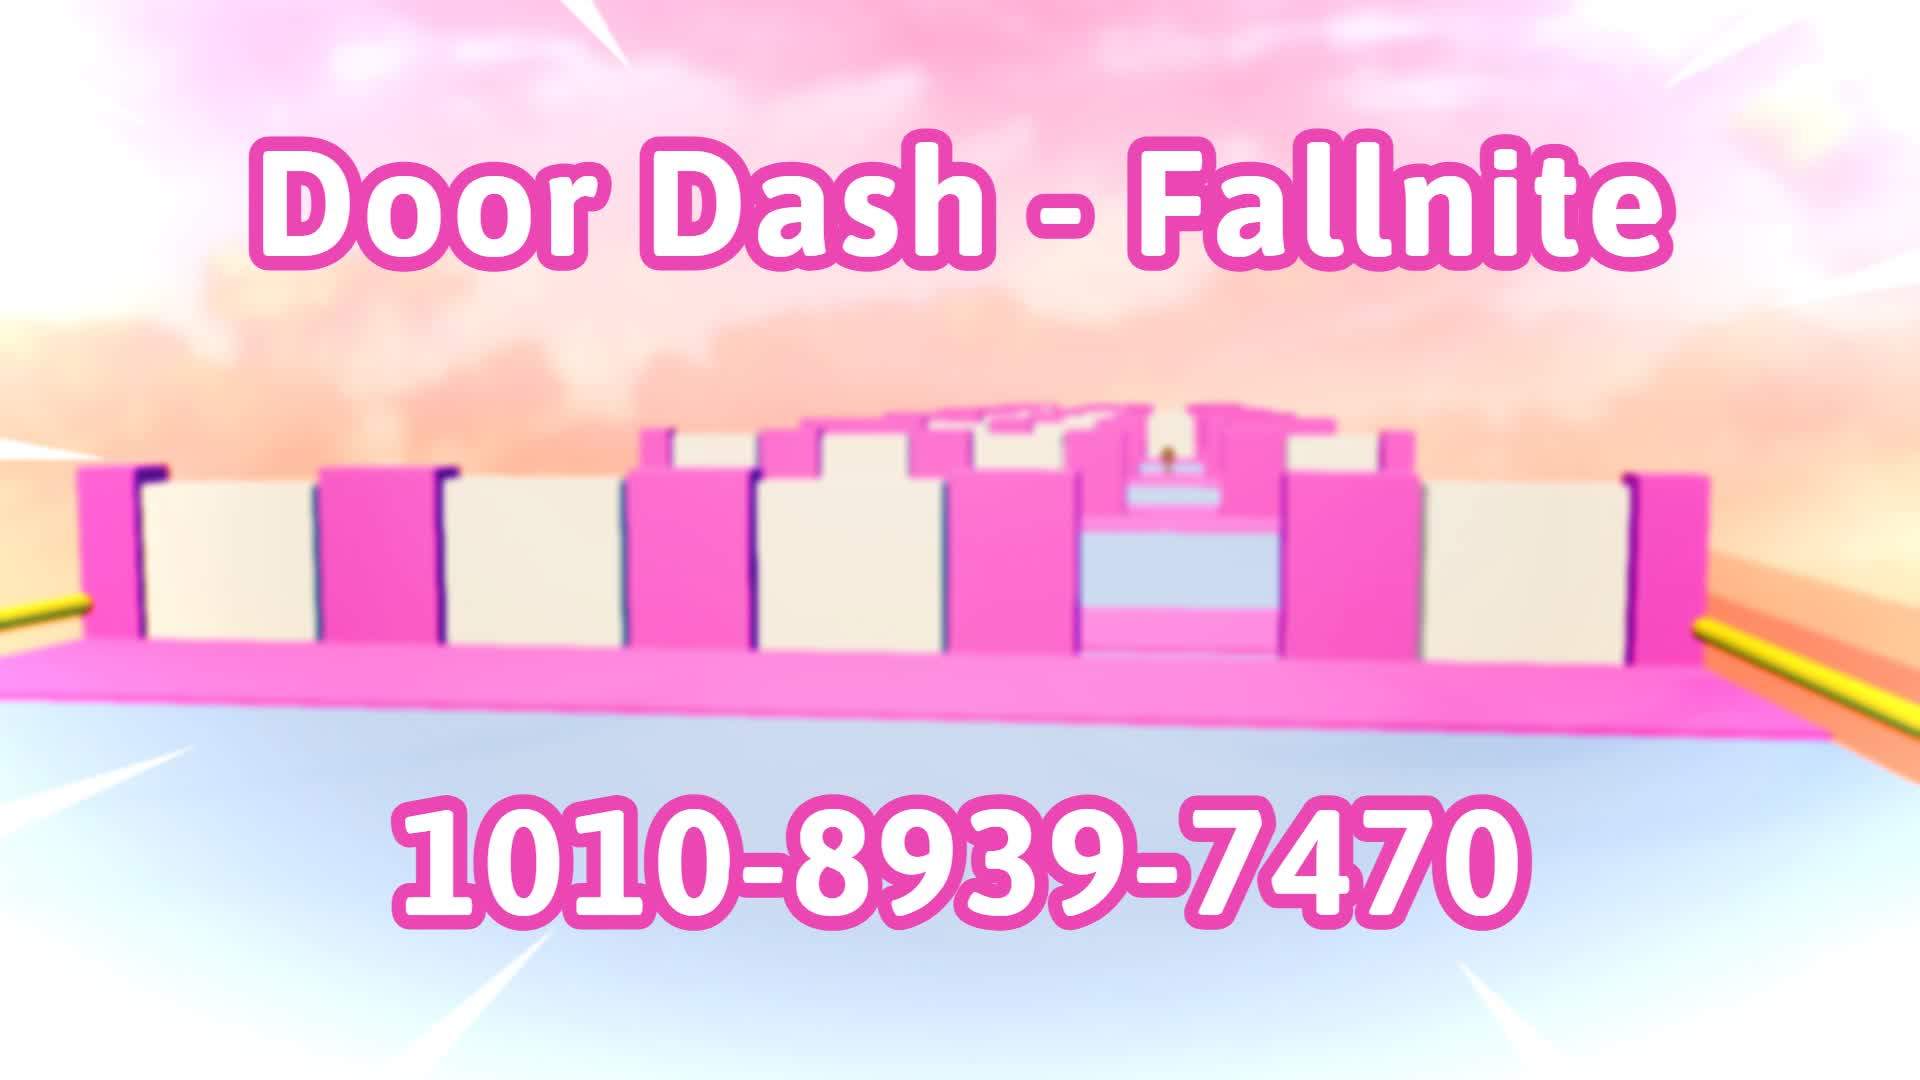 Door Dash - Fallnite